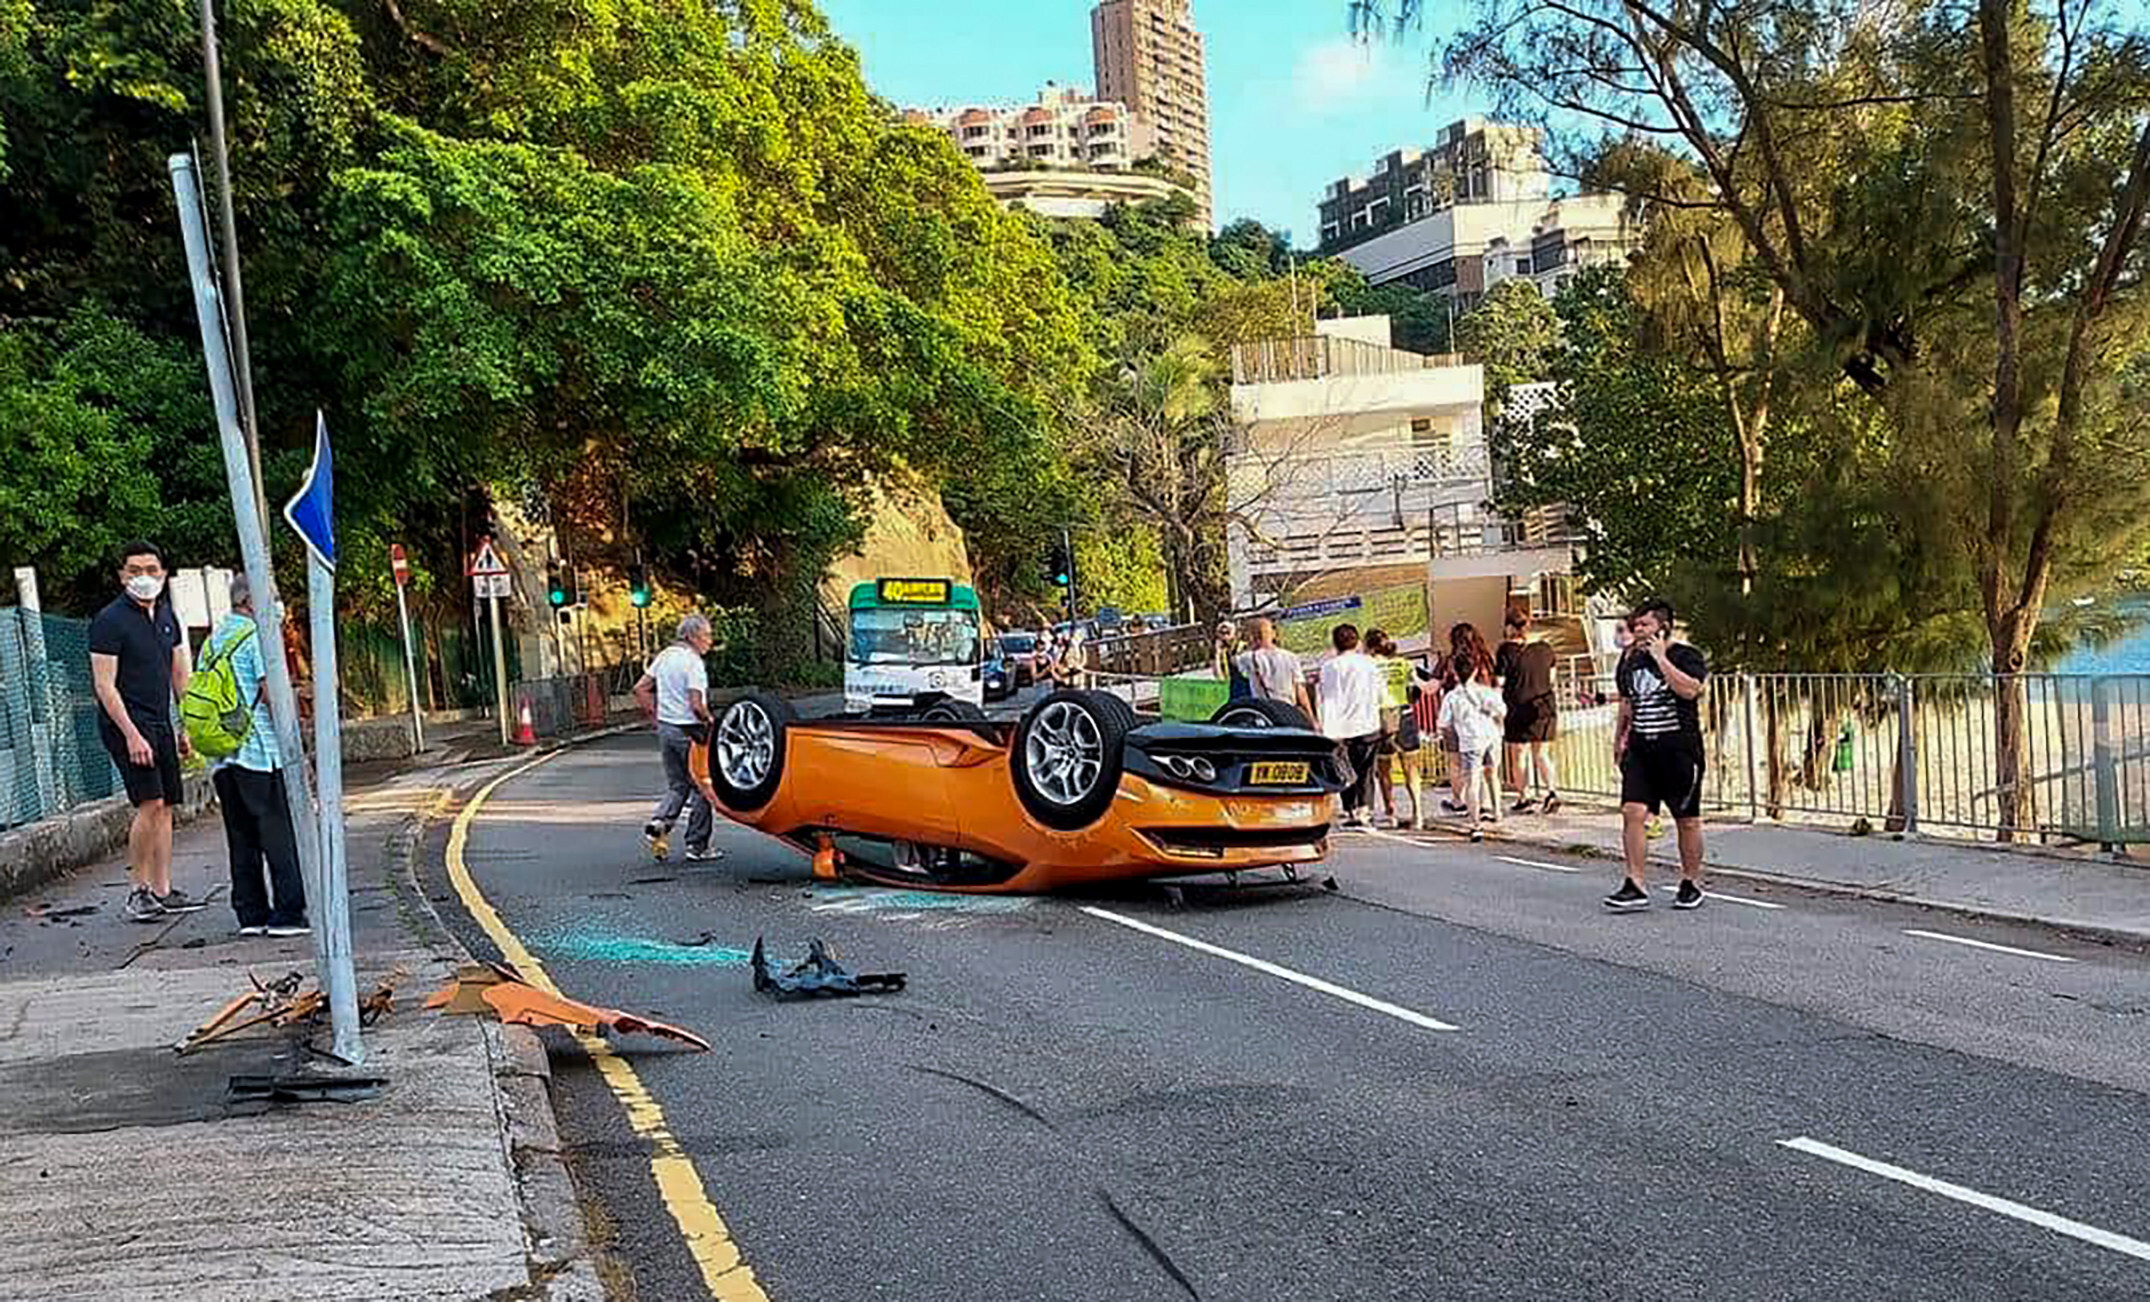 Hong Kong man and passenger both walk away with arm injuries after Lamborghini  crashes and flips over | South China Morning Post